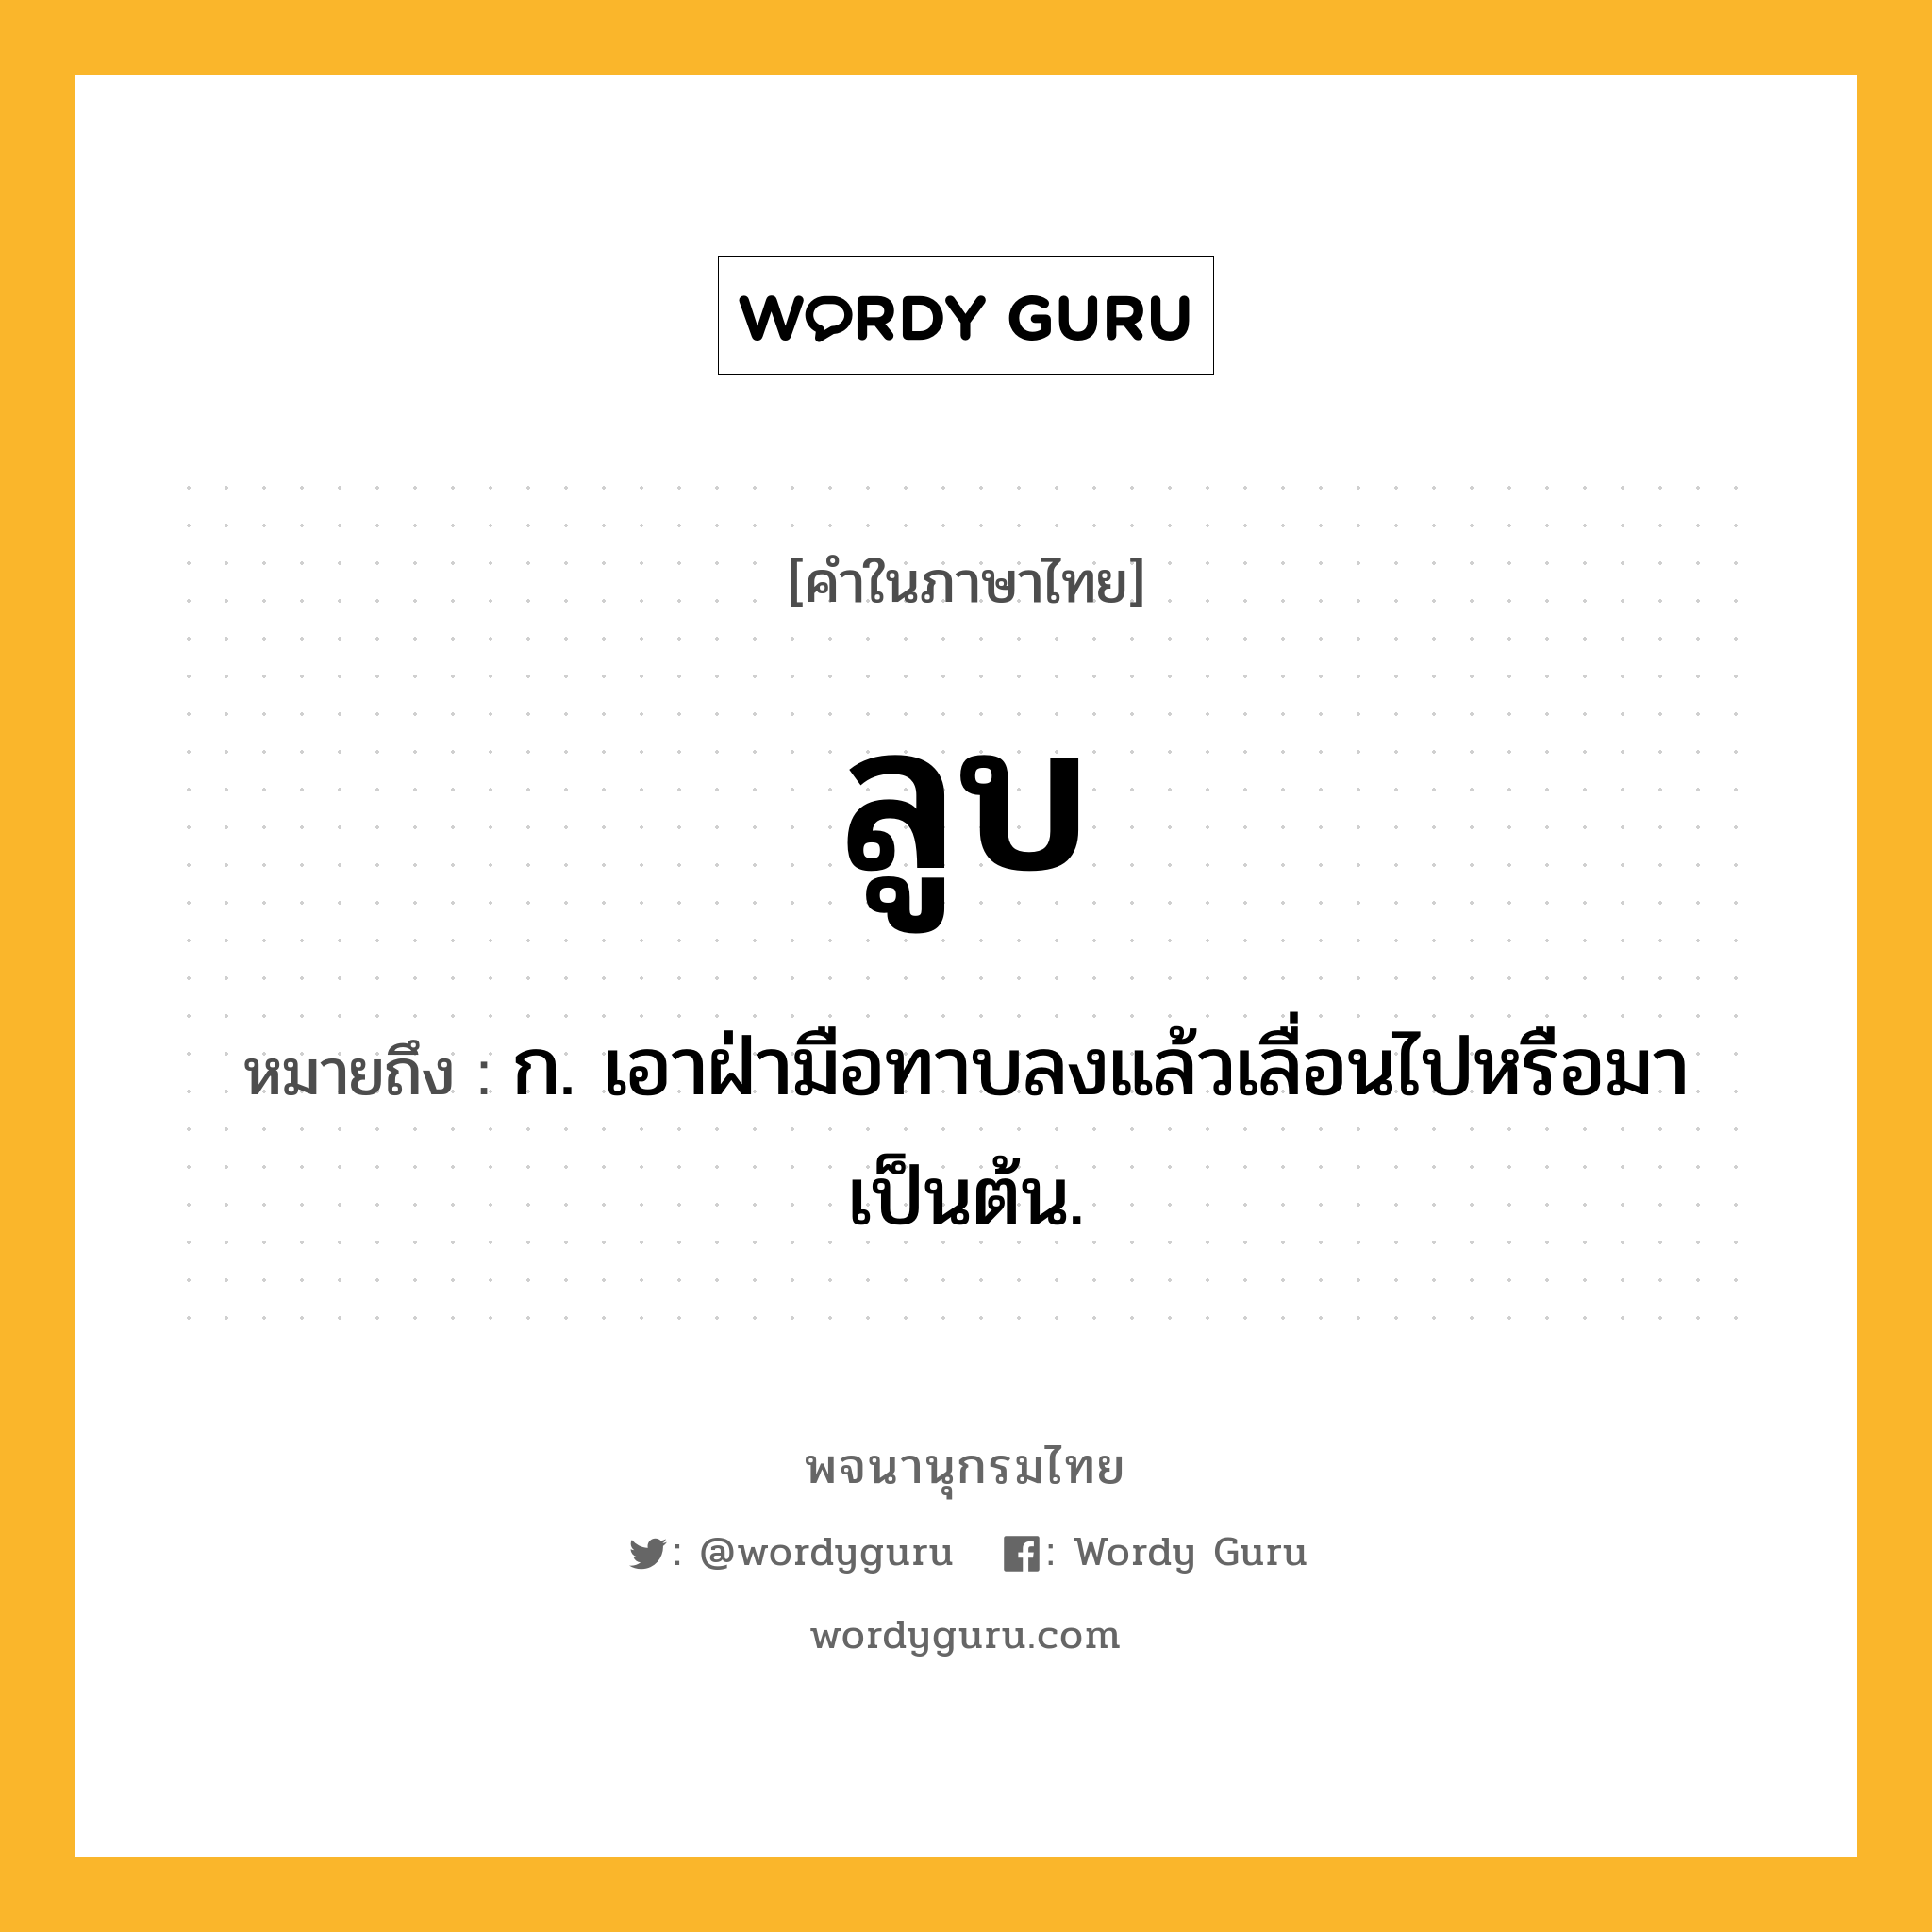 ลูบ หมายถึงอะไร?, คำในภาษาไทย ลูบ หมายถึง ก. เอาฝ่ามือทาบลงแล้วเลื่อนไปหรือมาเป็นต้น.